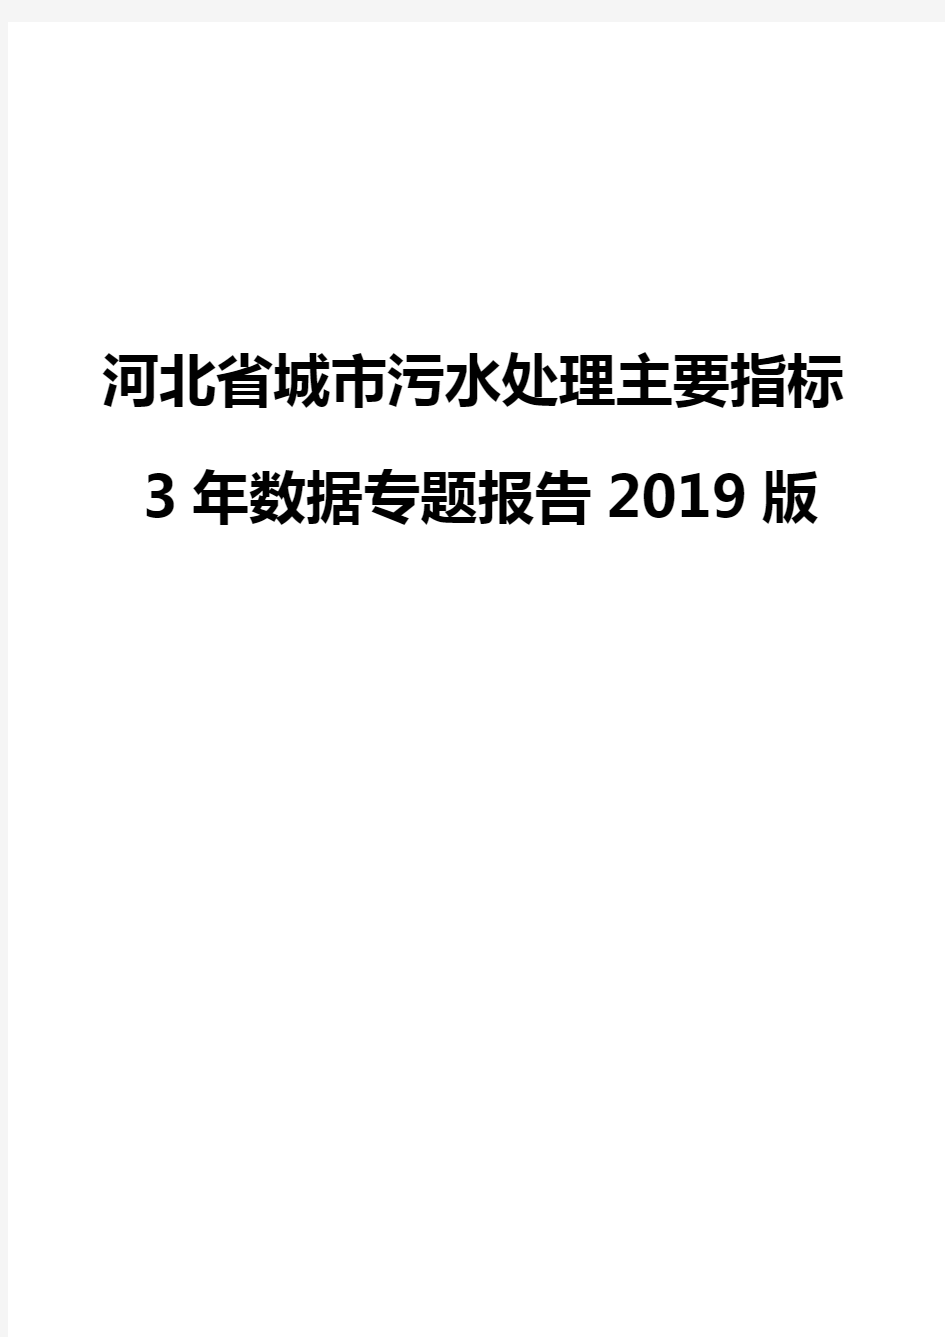 河北省城市污水处理主要指标3年数据专题报告2019版